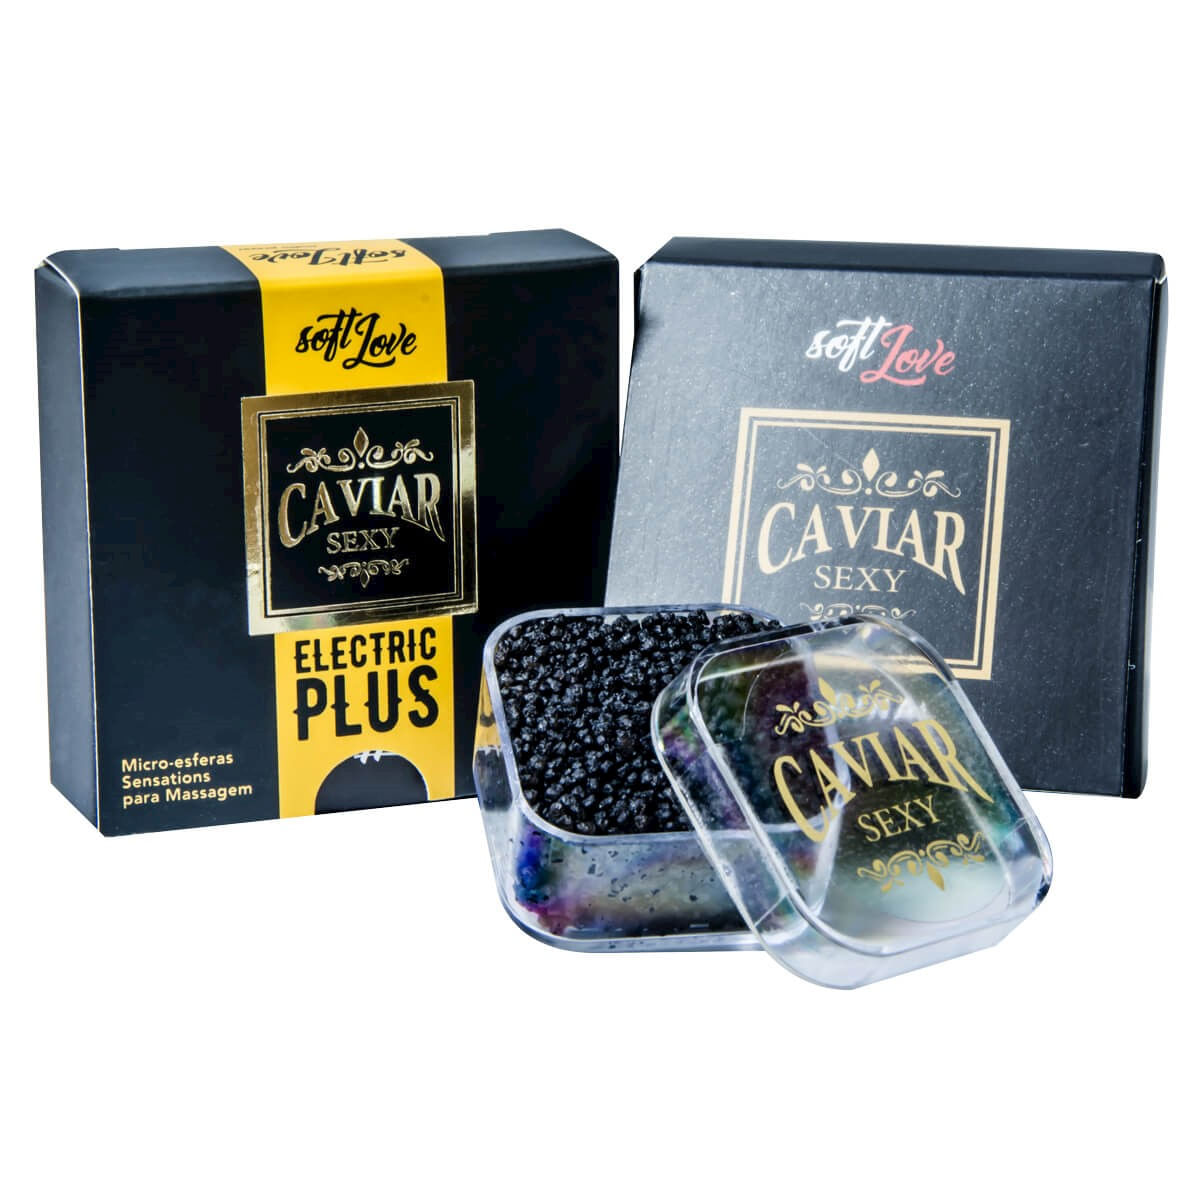 Caviar Sexy Electric Plus Micro Esferas Sensations para Massagem 14g Soft Love